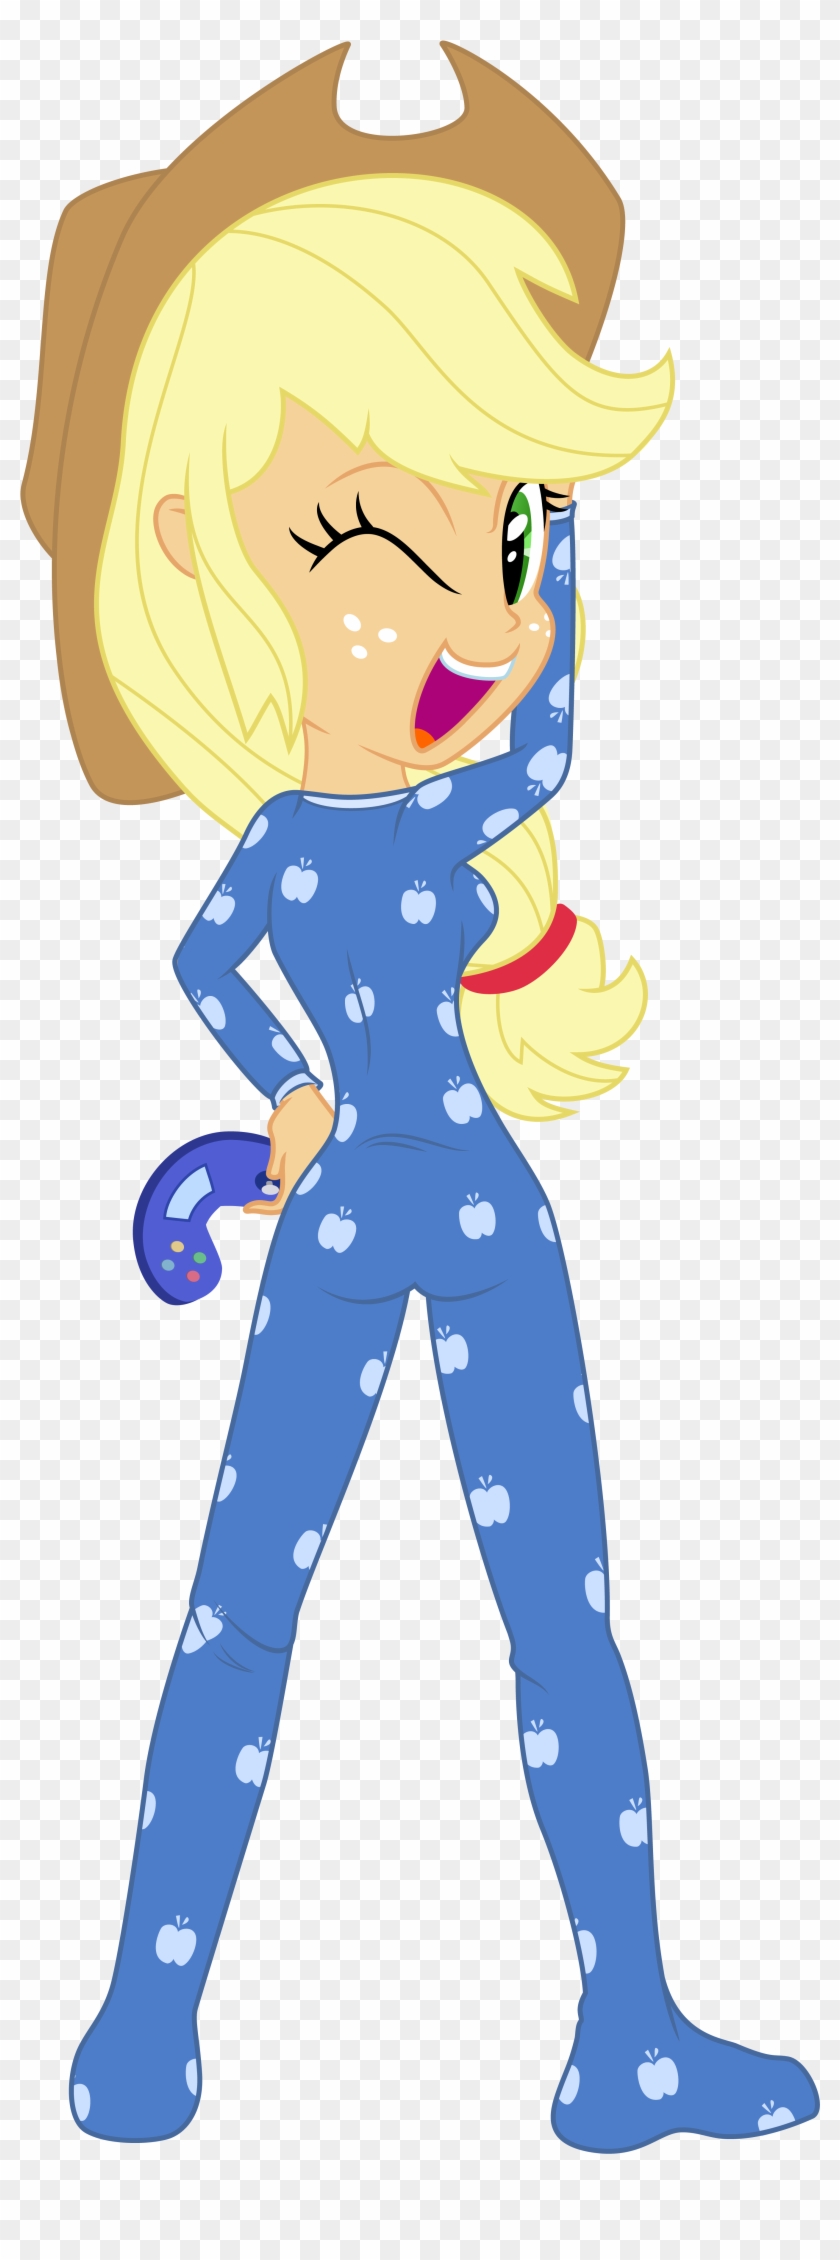 Applejack Rainbow Dash Clothing Apple Bloom Pajamas - My Little Pony Applejack Pajamas #770441